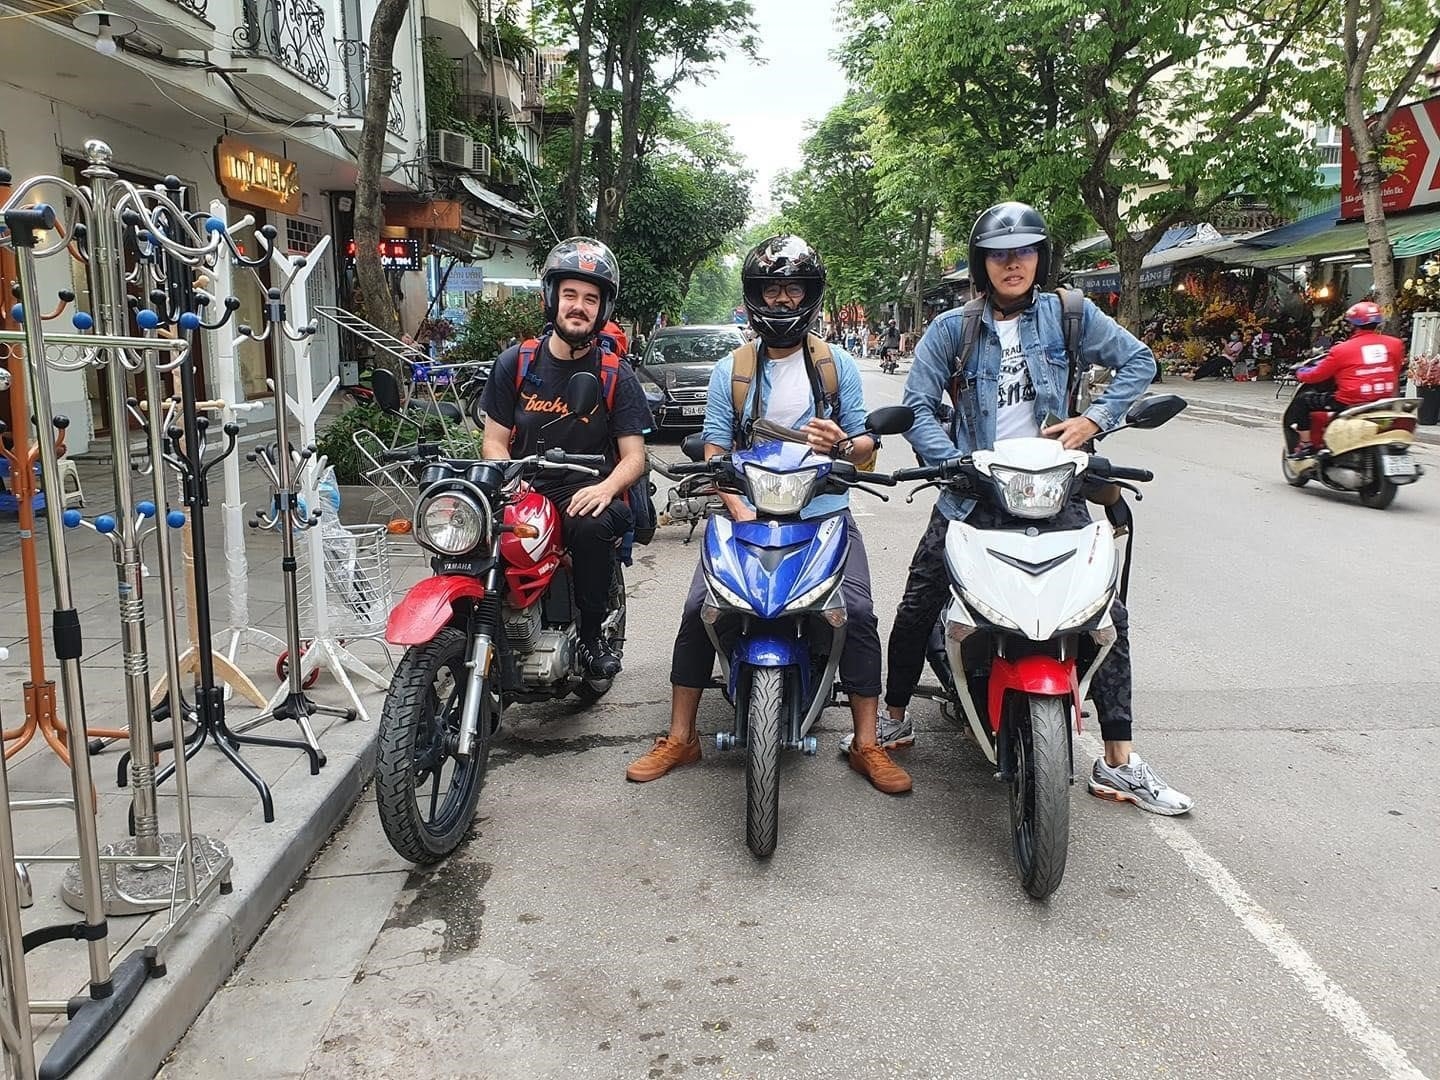 Thuê xe máy tự lái Hà Nội - 13535 Motorbike là dịch vụ cung cấp xe máy cho thuê tại Hà Nội, giúp khách hàng tự lái xe để khám phá thành phố, trải nghiệm và khám phá vẻ đẹp của Hà Nội một cách tự do và tiện lợi.